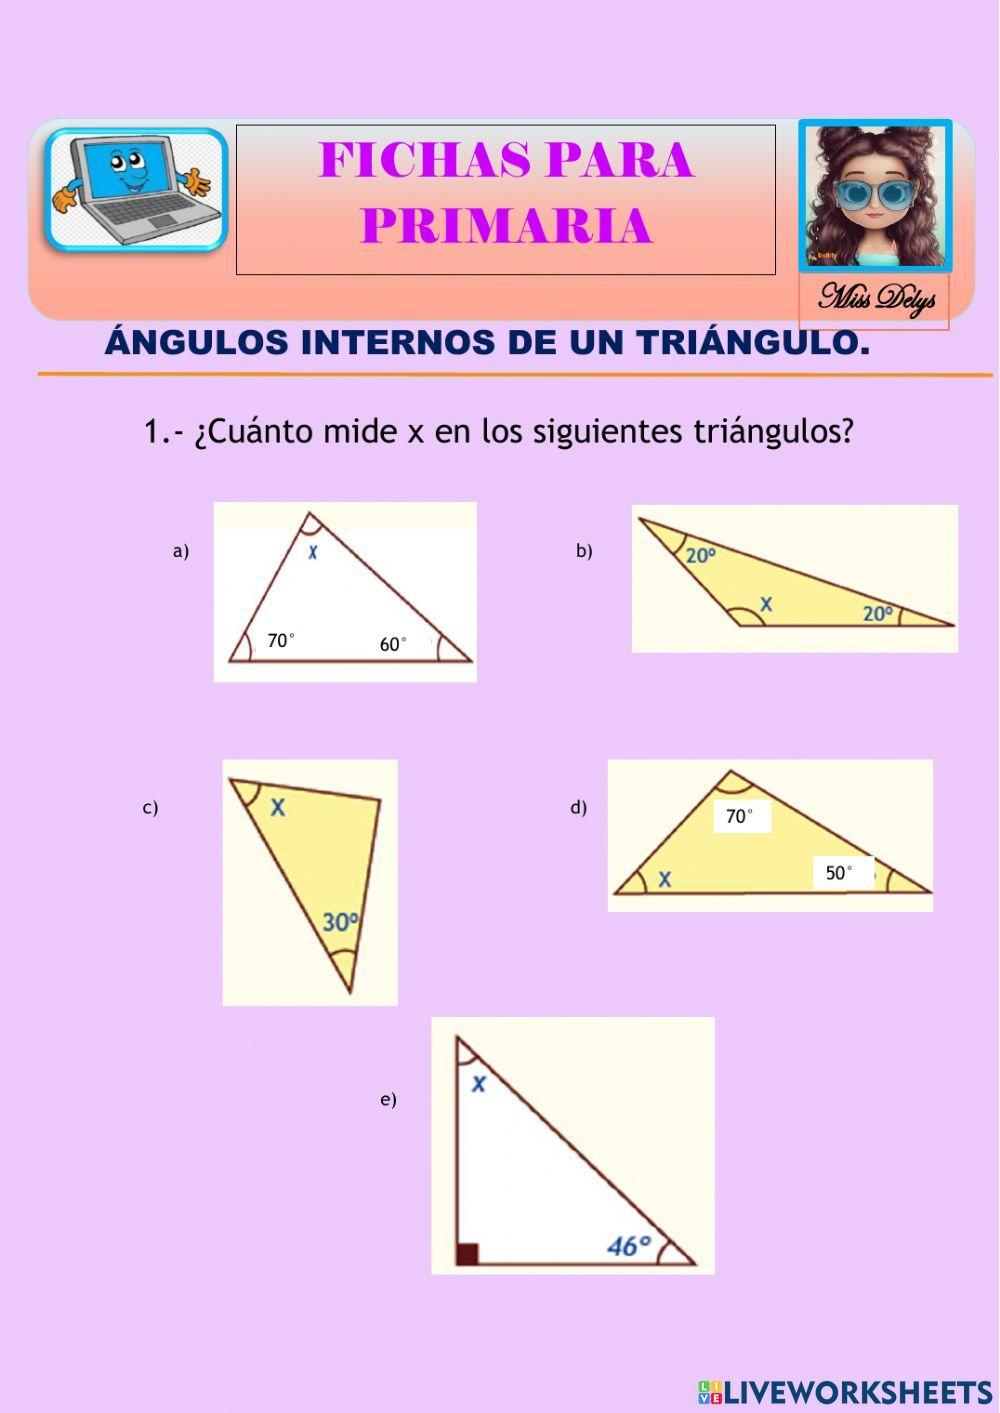 Ángulos internos de un triángulo